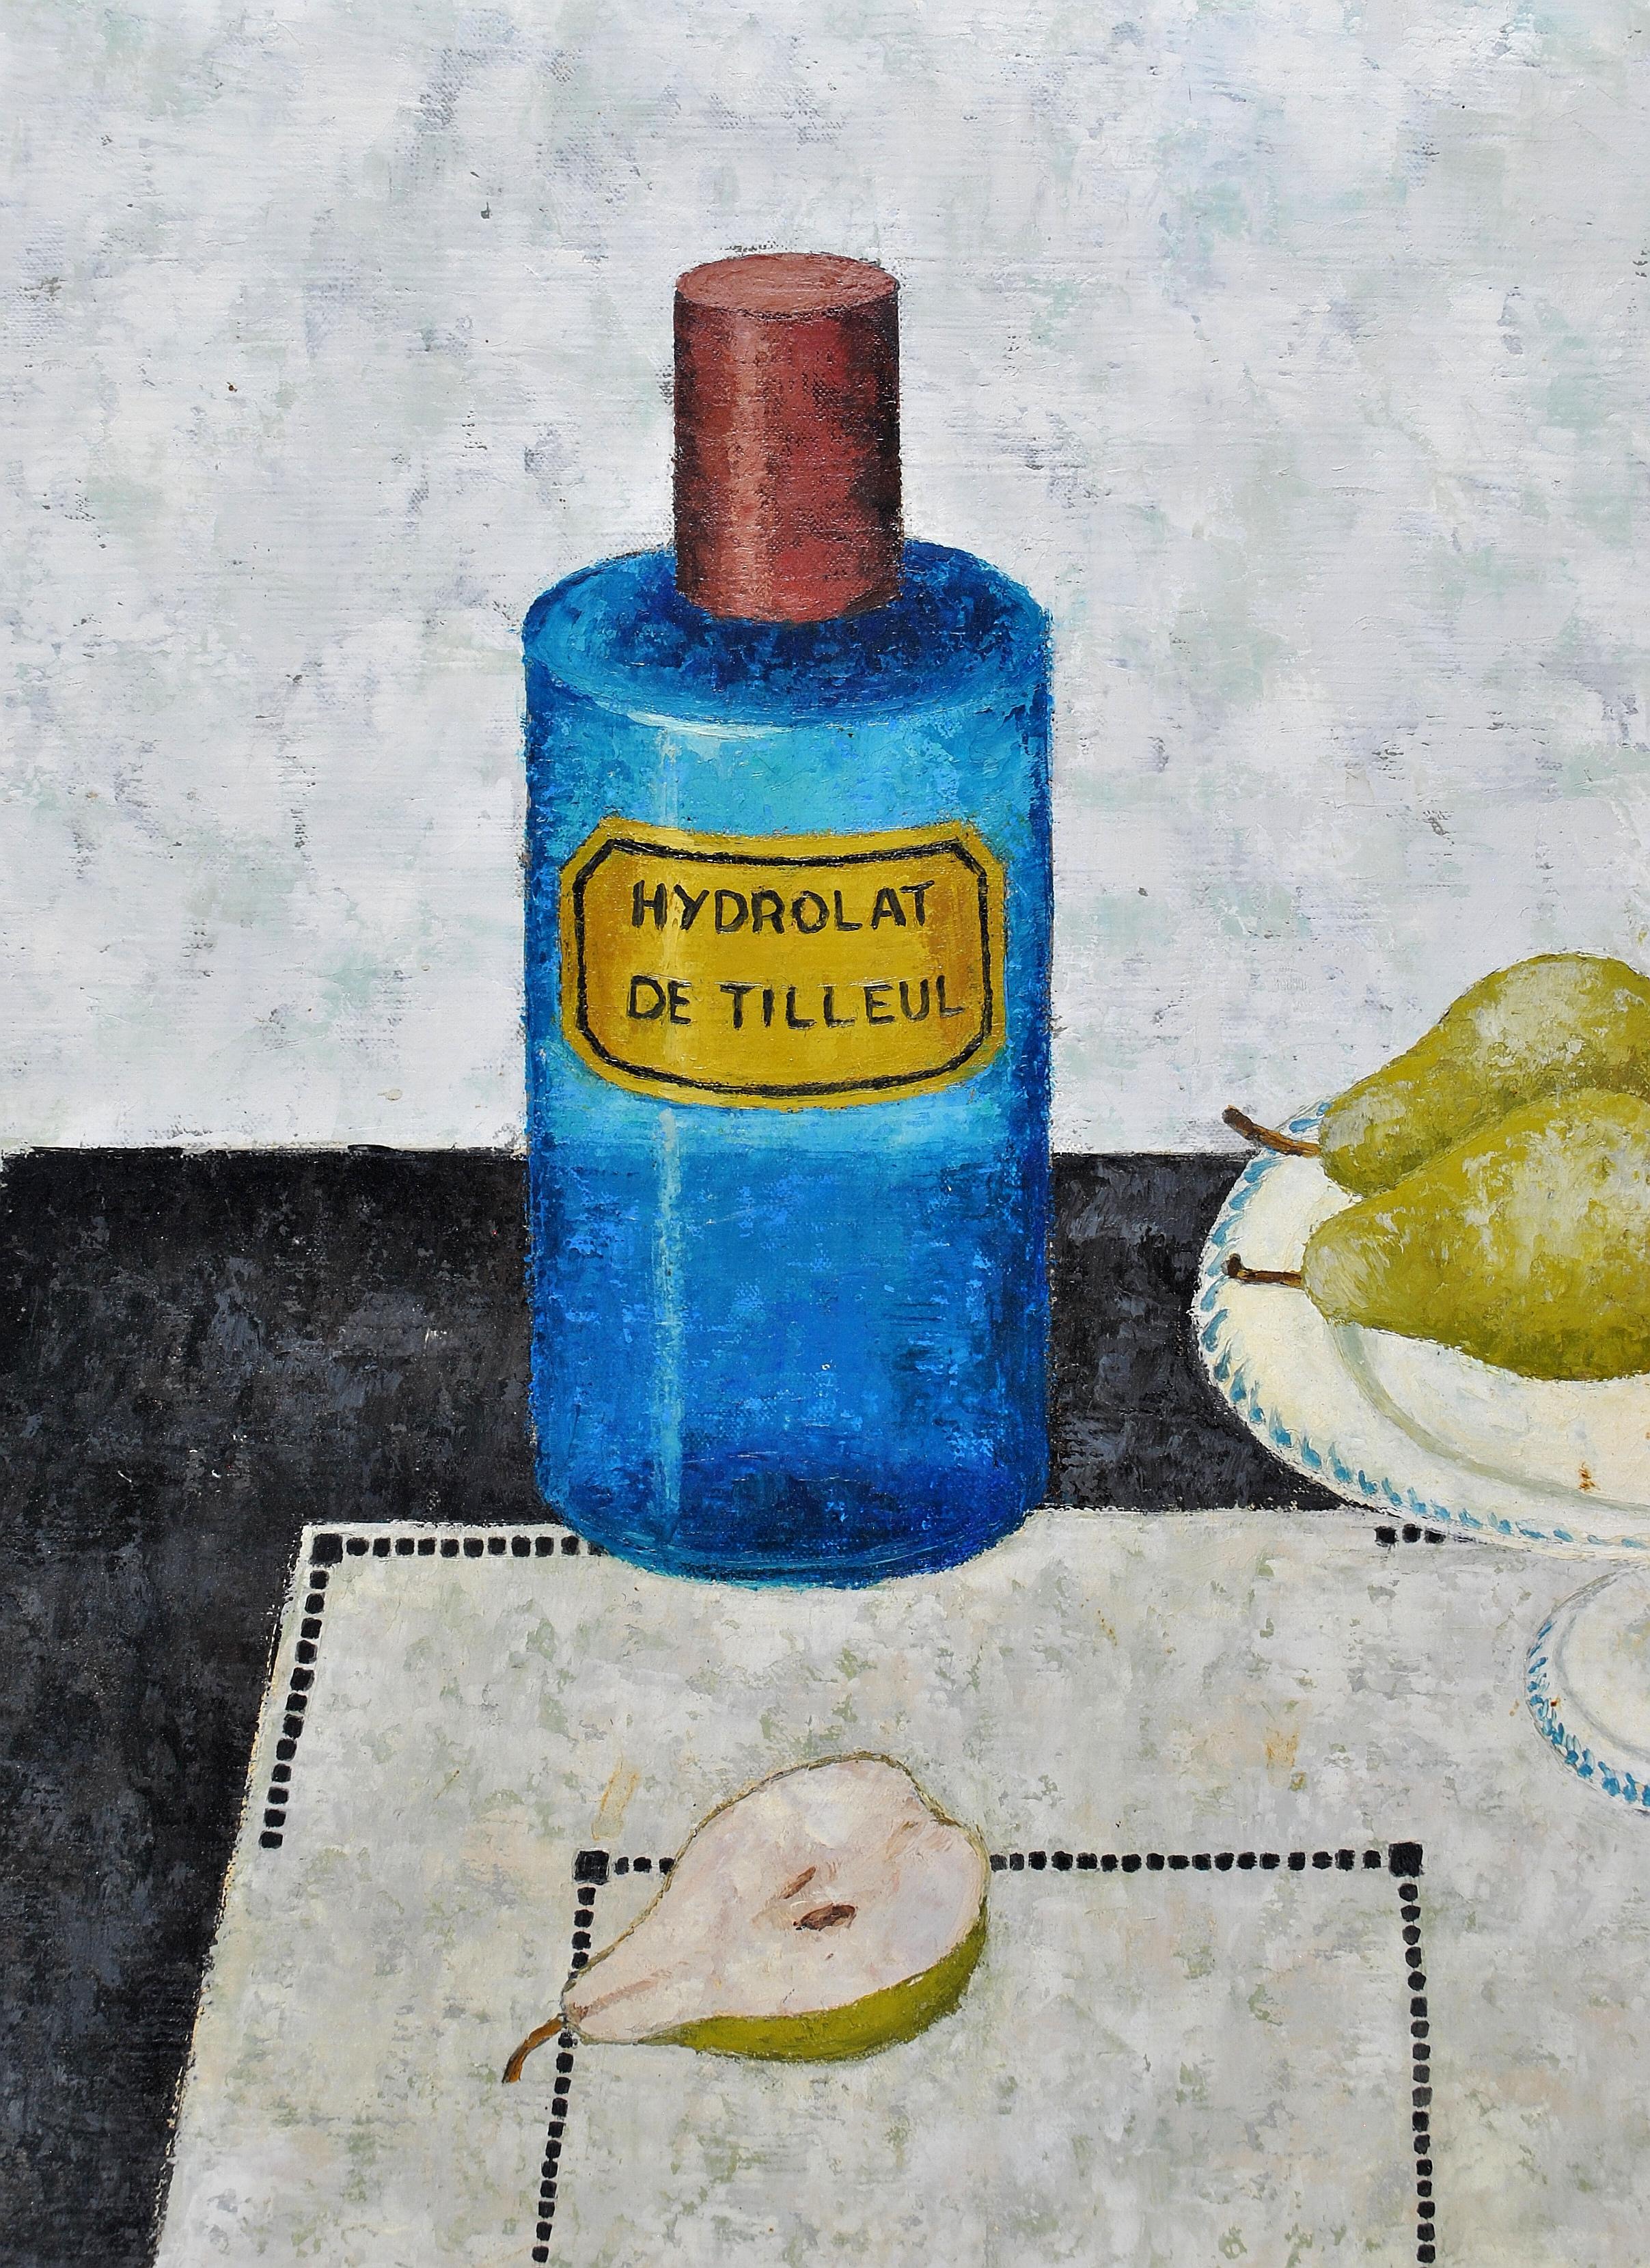 Superbe grande huile sur toile française des années 1950 représentant des poires et une bouteille d'apothicaire bleue sur une table par Peter Orlando. 

Intéressant sujet peint dans le style naïf français caractéristique du milieu du XXe siècle par